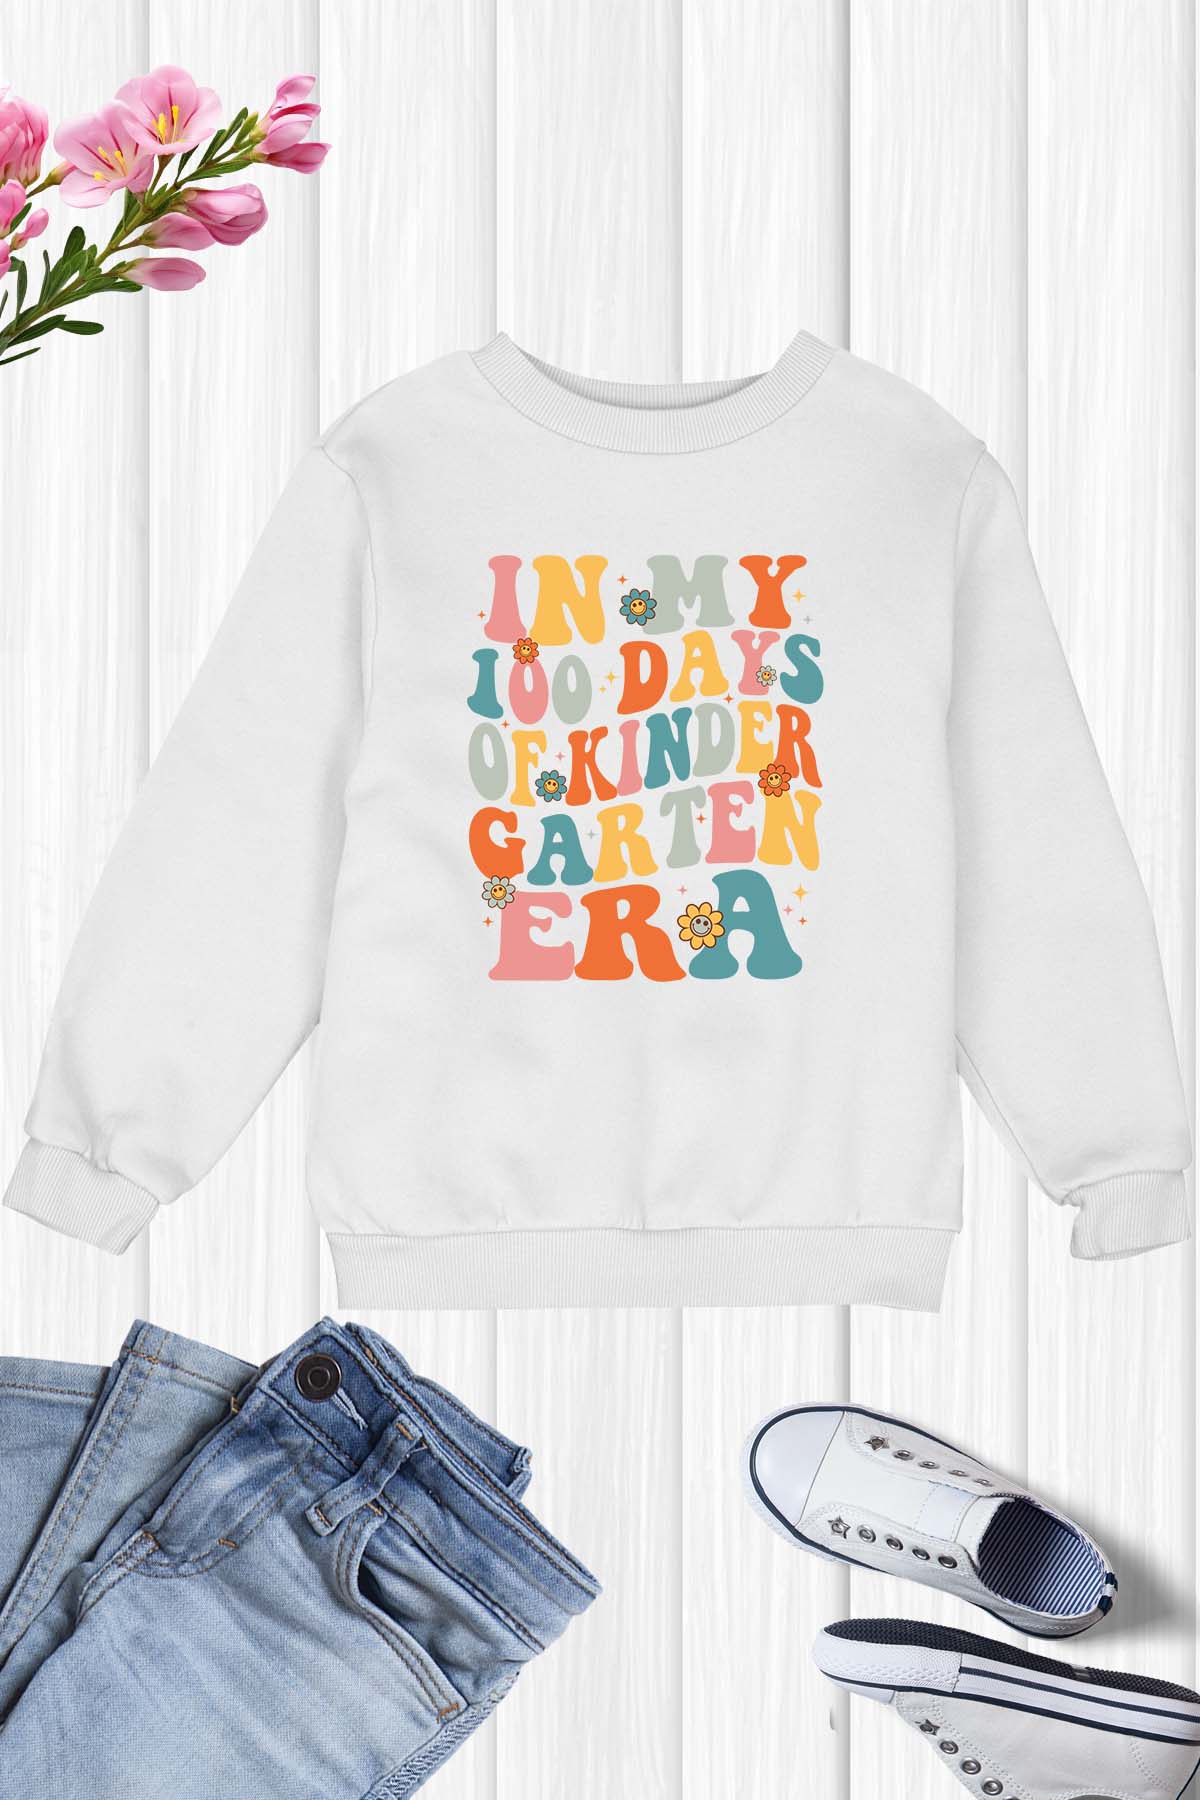 In My 100 Days of Kindergarten Era Trendy Kids Sweatshirt